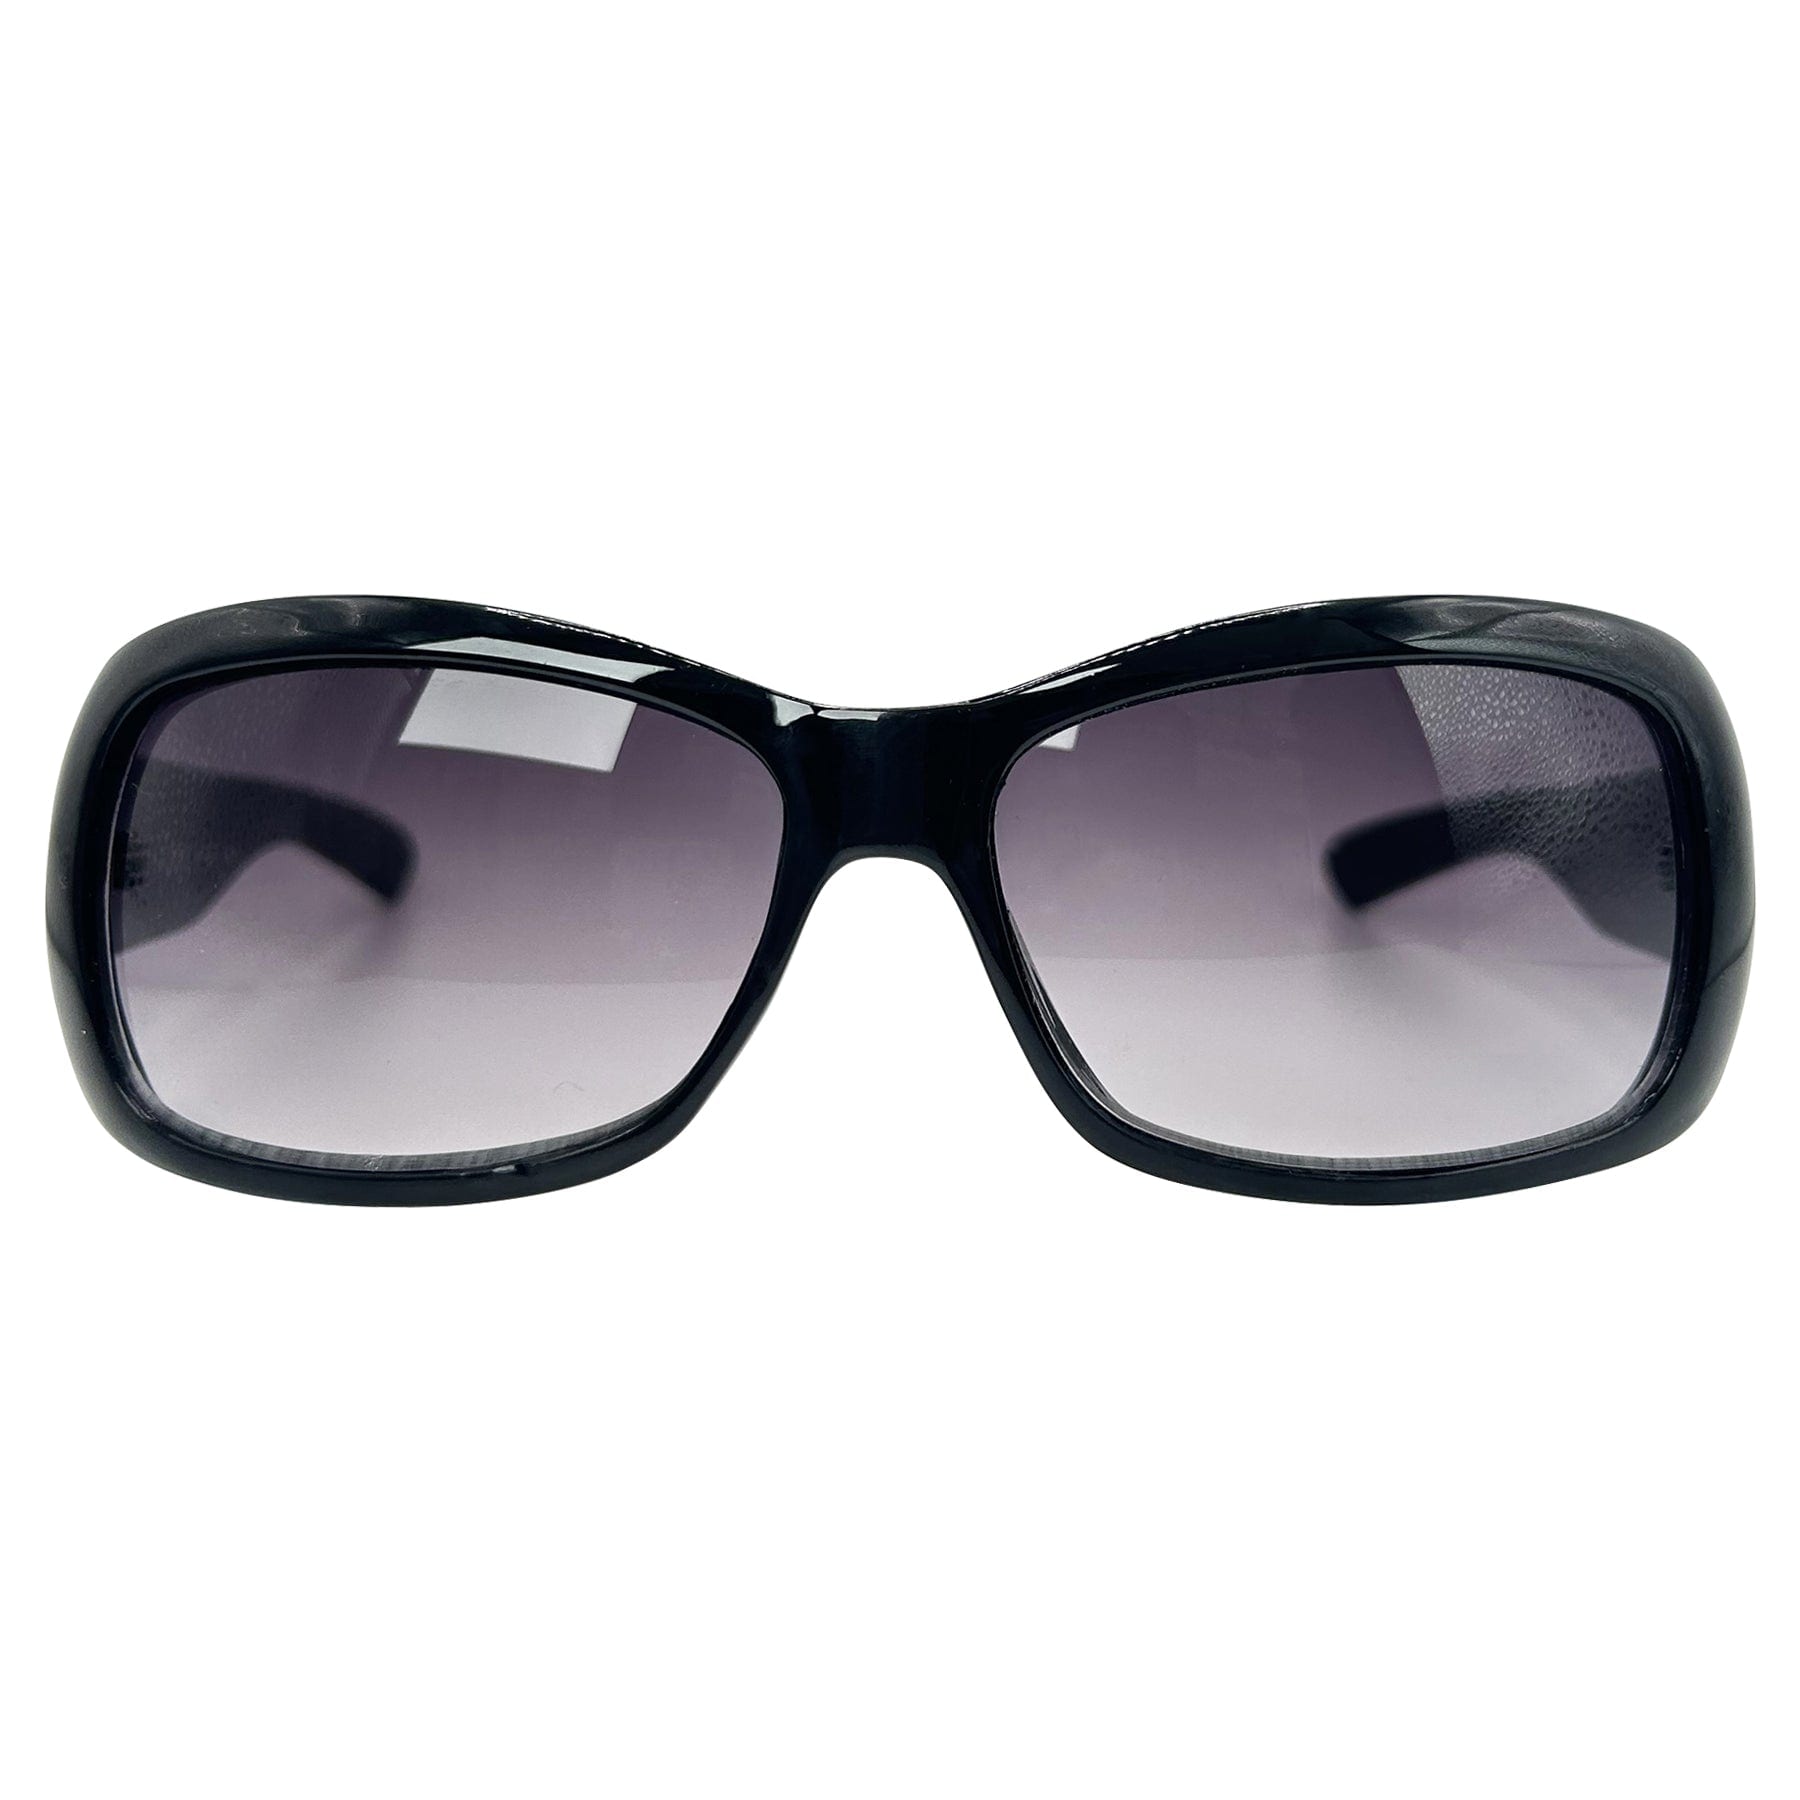 90s square vintage sunglasses women 